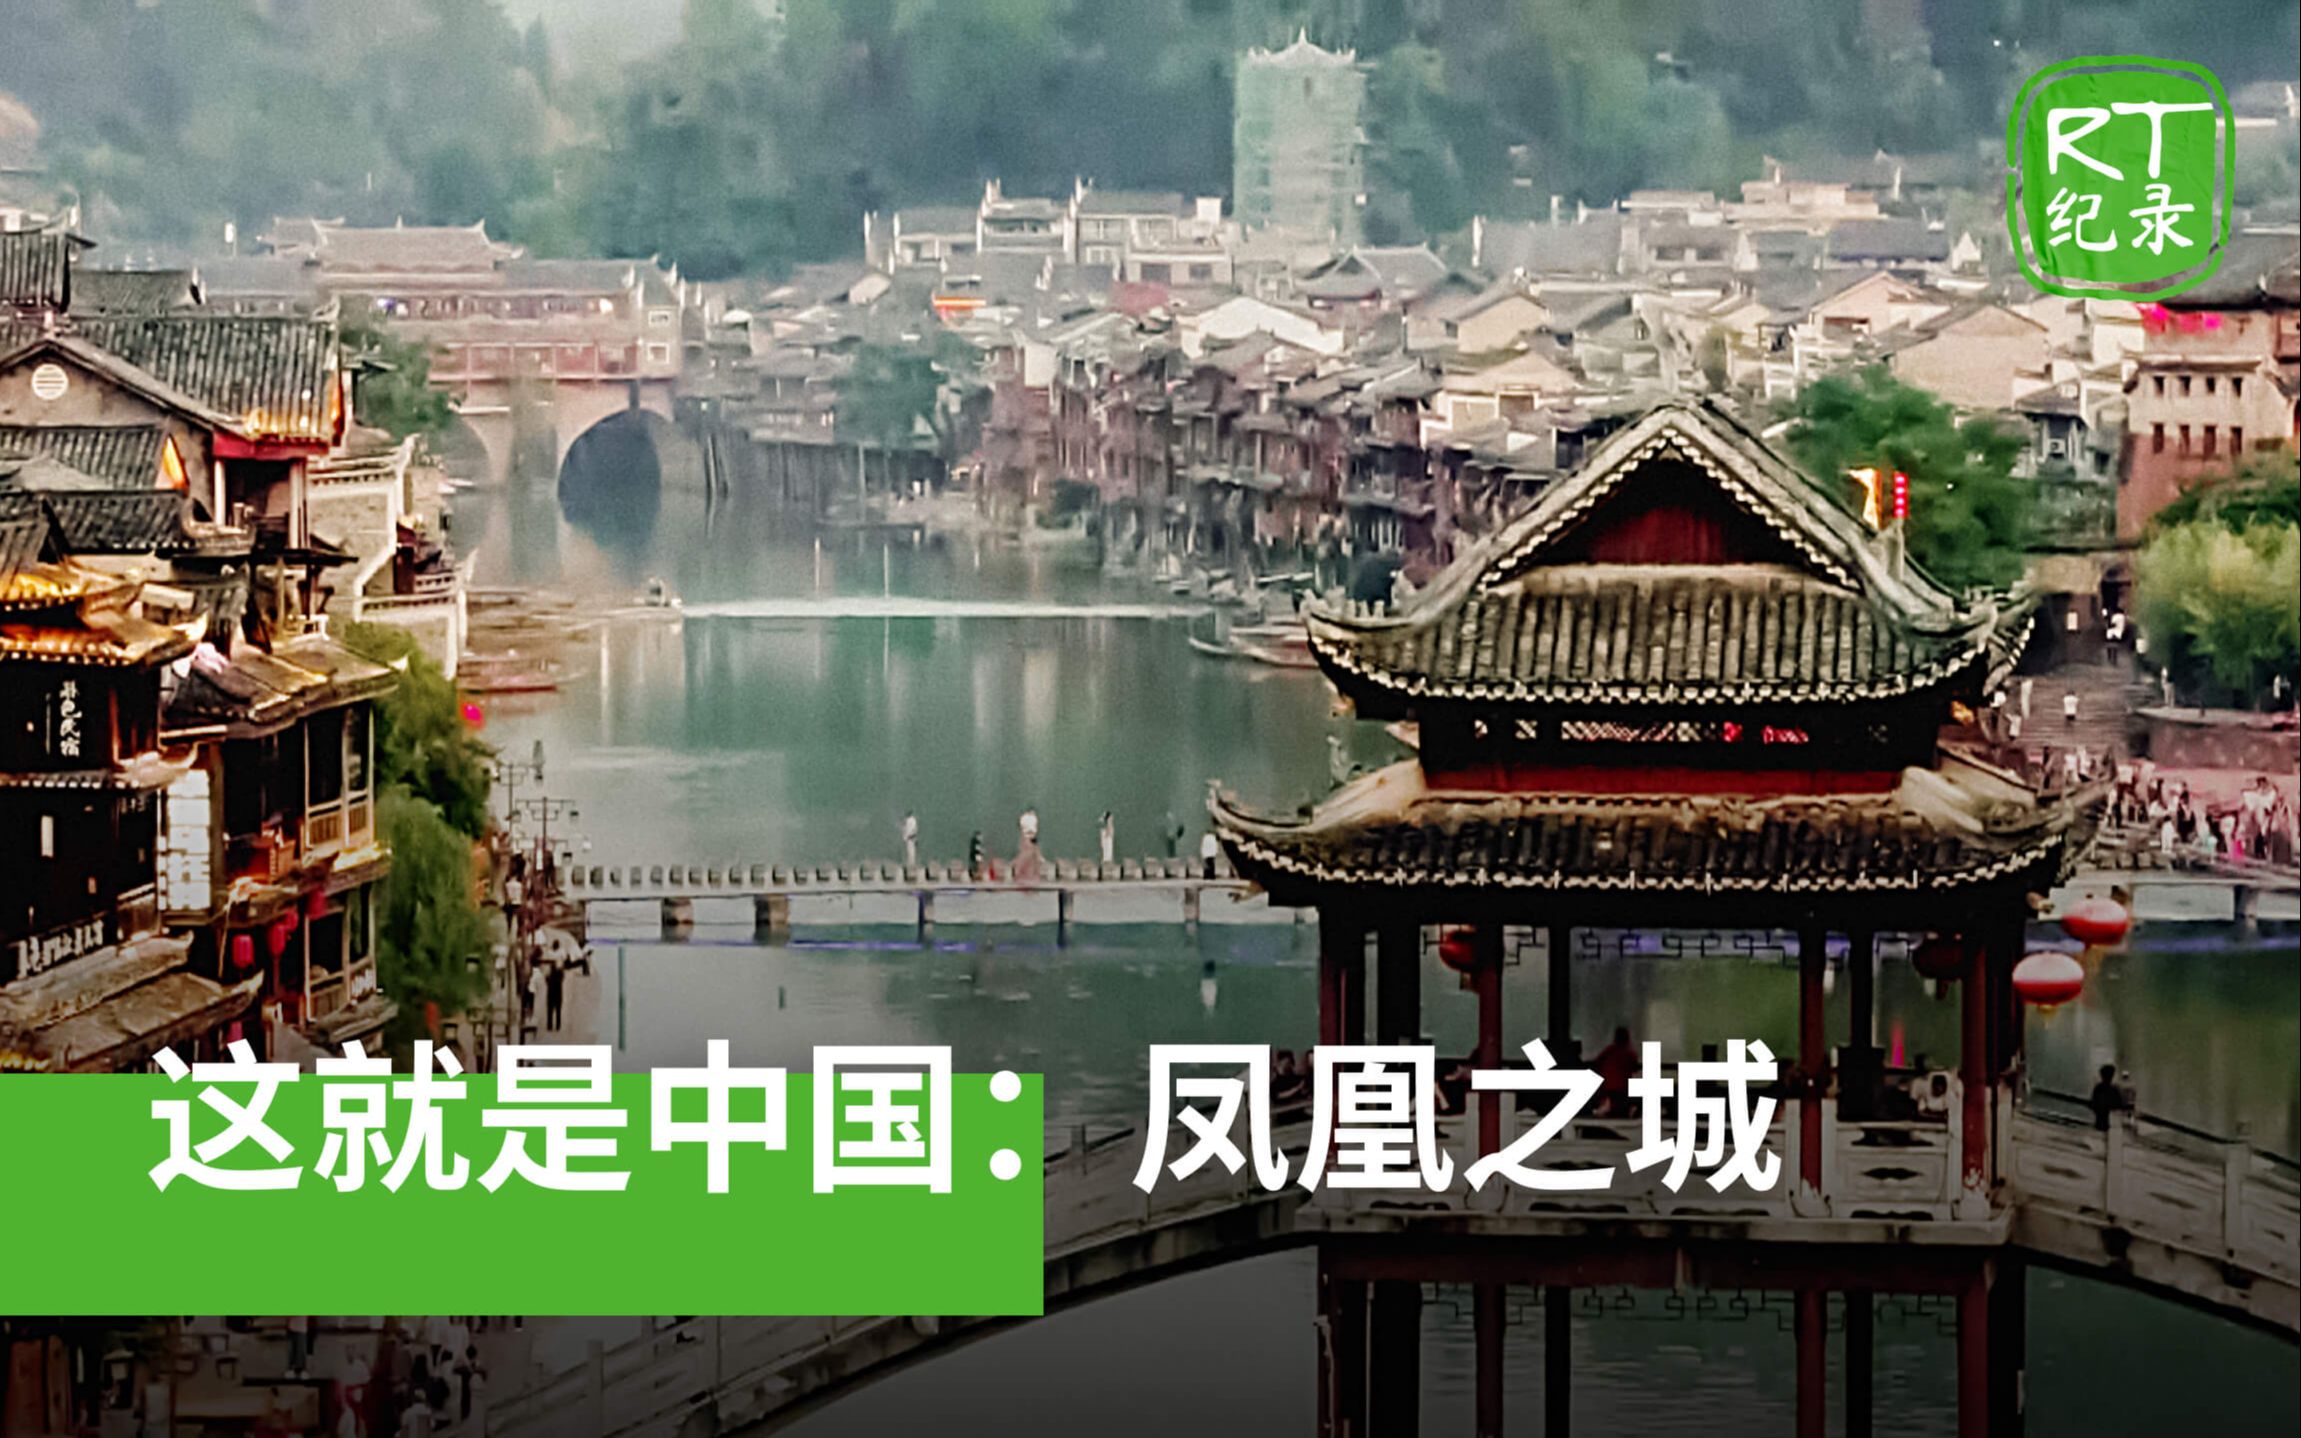 《这就是中国》凤凰之城——凤凰古城吸引游客的秘密